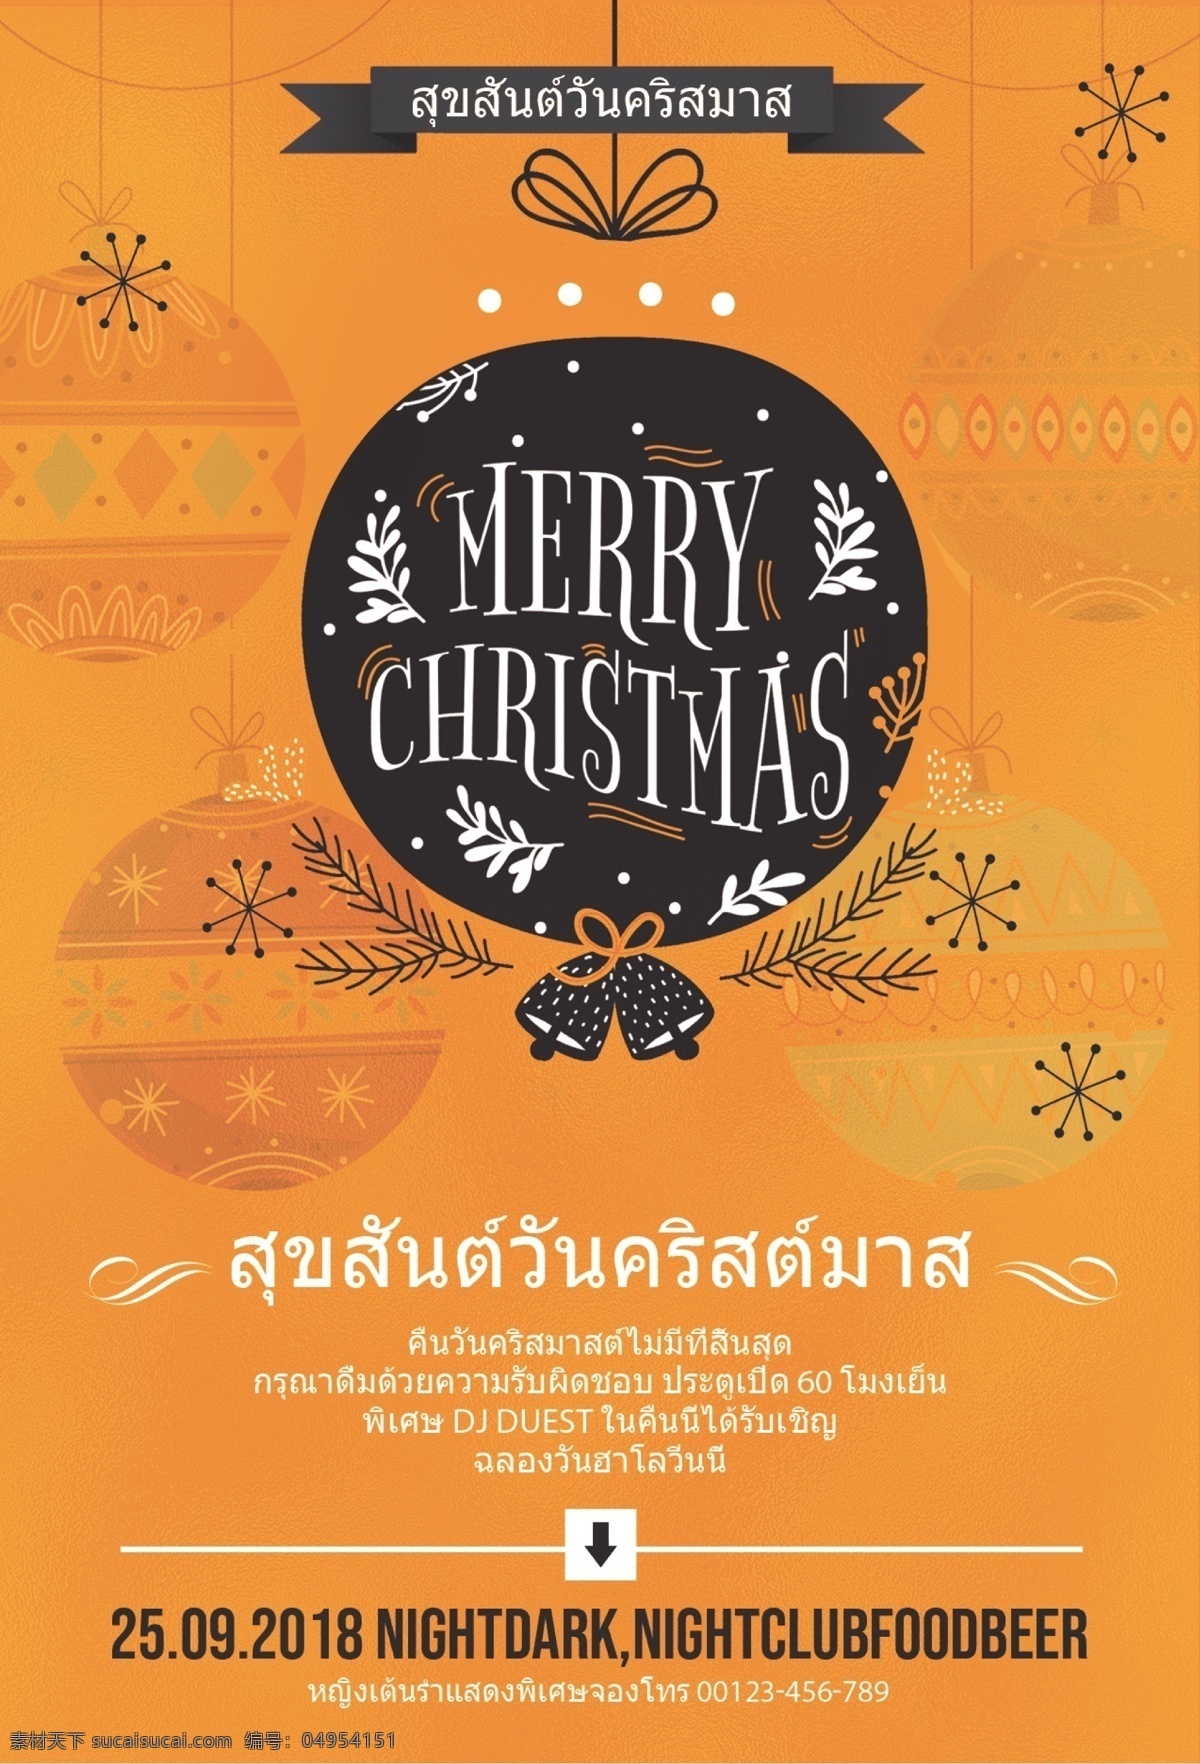 泰国 圣诞快乐 泰国风格 圣诞节 小铃铛 装饰 节日嘉年华 泰国模式 图案 海报